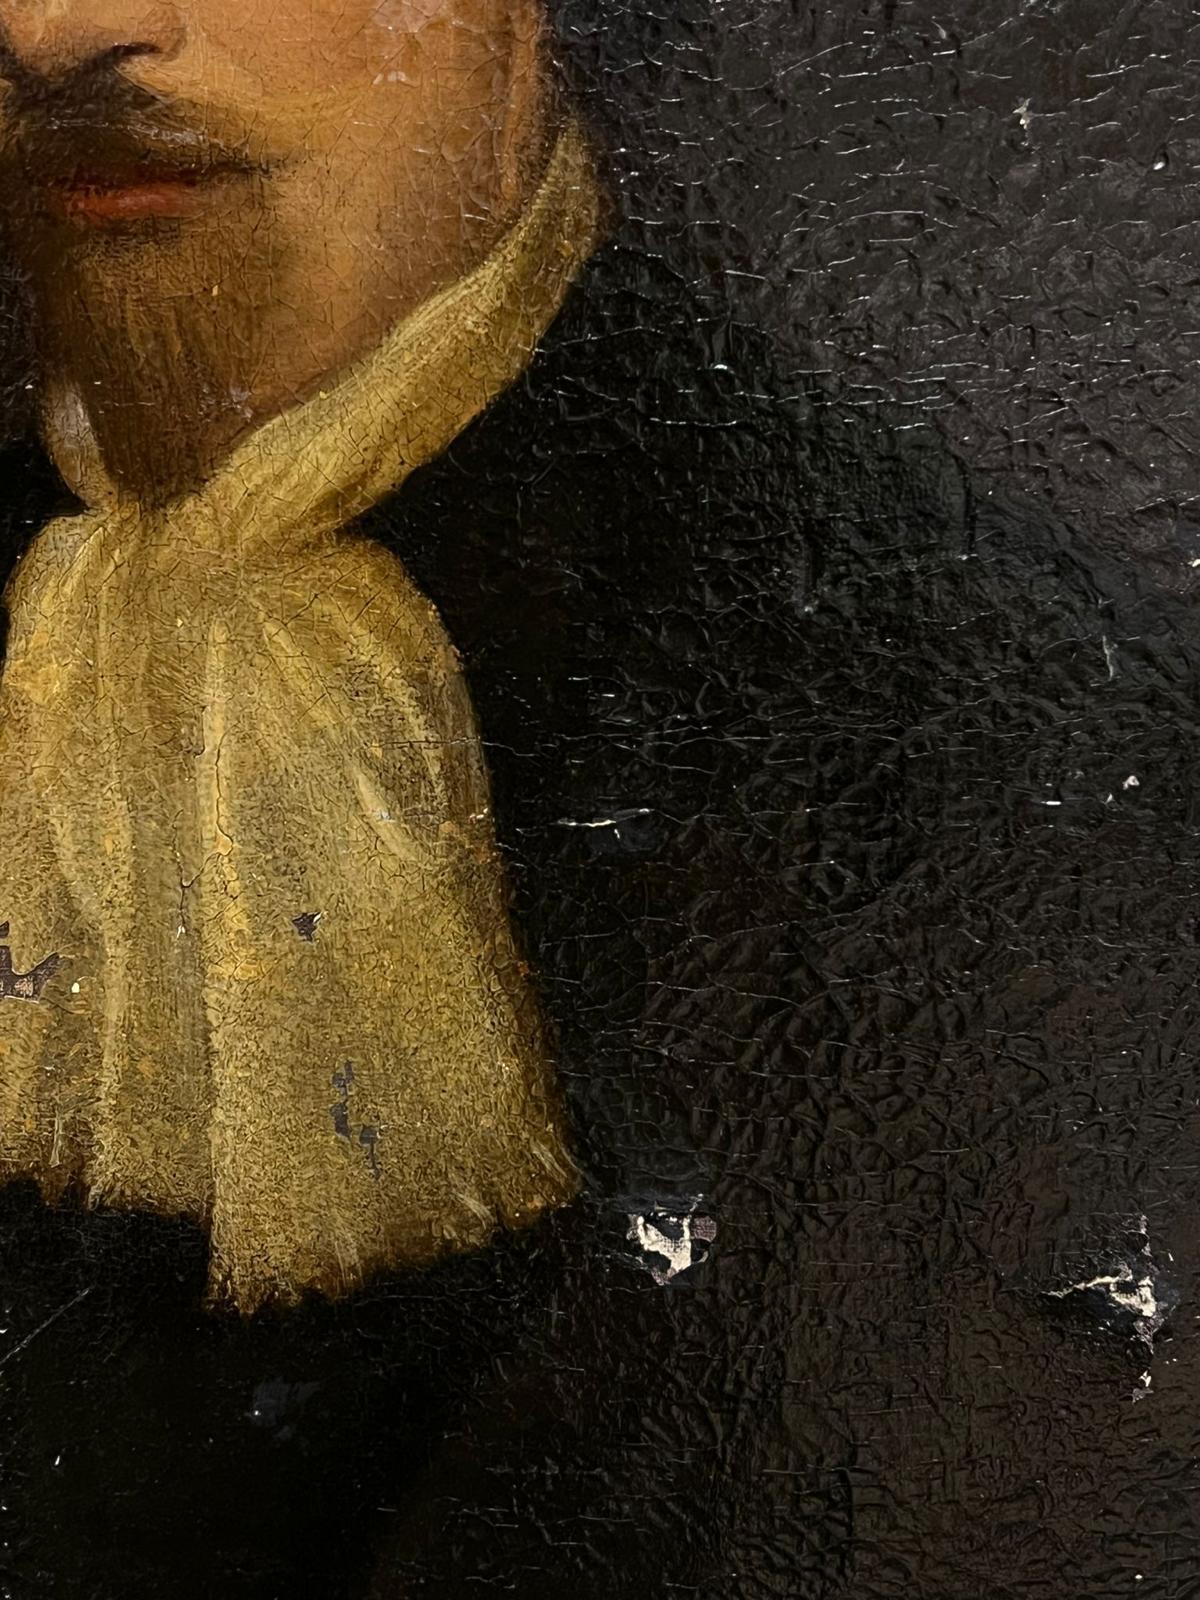 Porträt eines Gentleman
Französische Schule, 18. Jahrhundert
Öl auf Leinwand, ungerahmt
Leinwand : 25 x 20 Zoll
Provenienz: Privatsammlung, Frankreich
Zustand: Das Gemälde ist in einem guten Zustand, muss aber restauriert werden, wie auf den Fotos